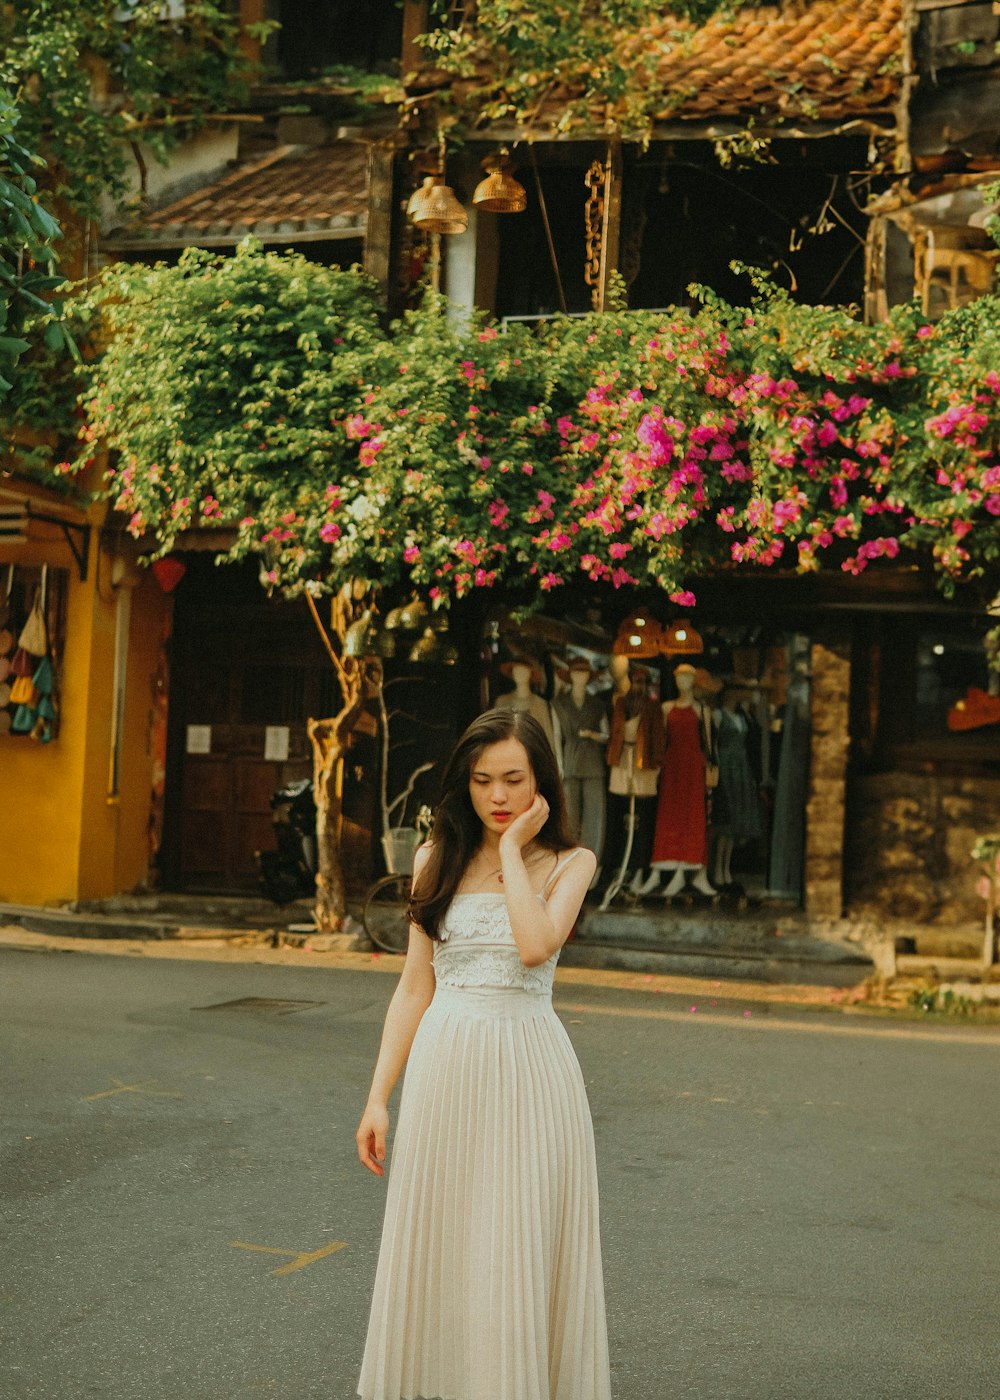 Eine Frau in einem weißen Kleid steht vor einem Gebäude